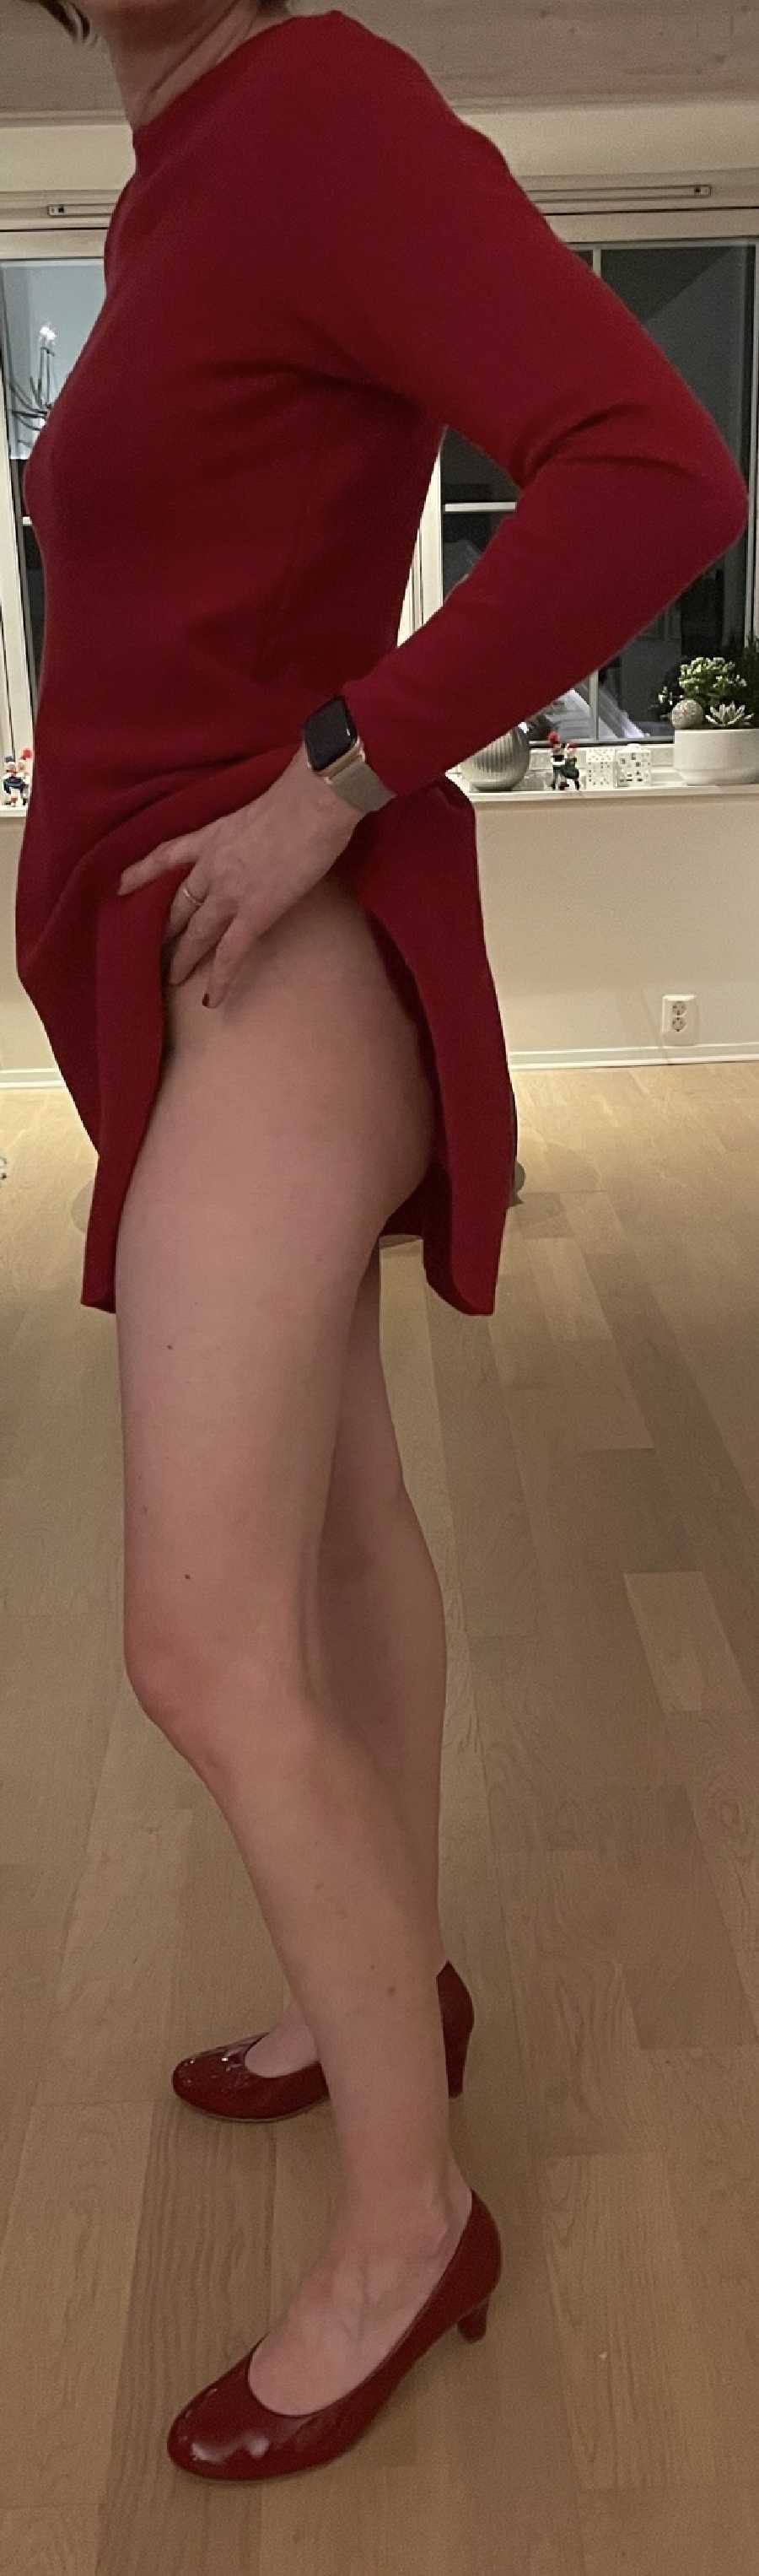 Red Dress/Shoes, no Panties